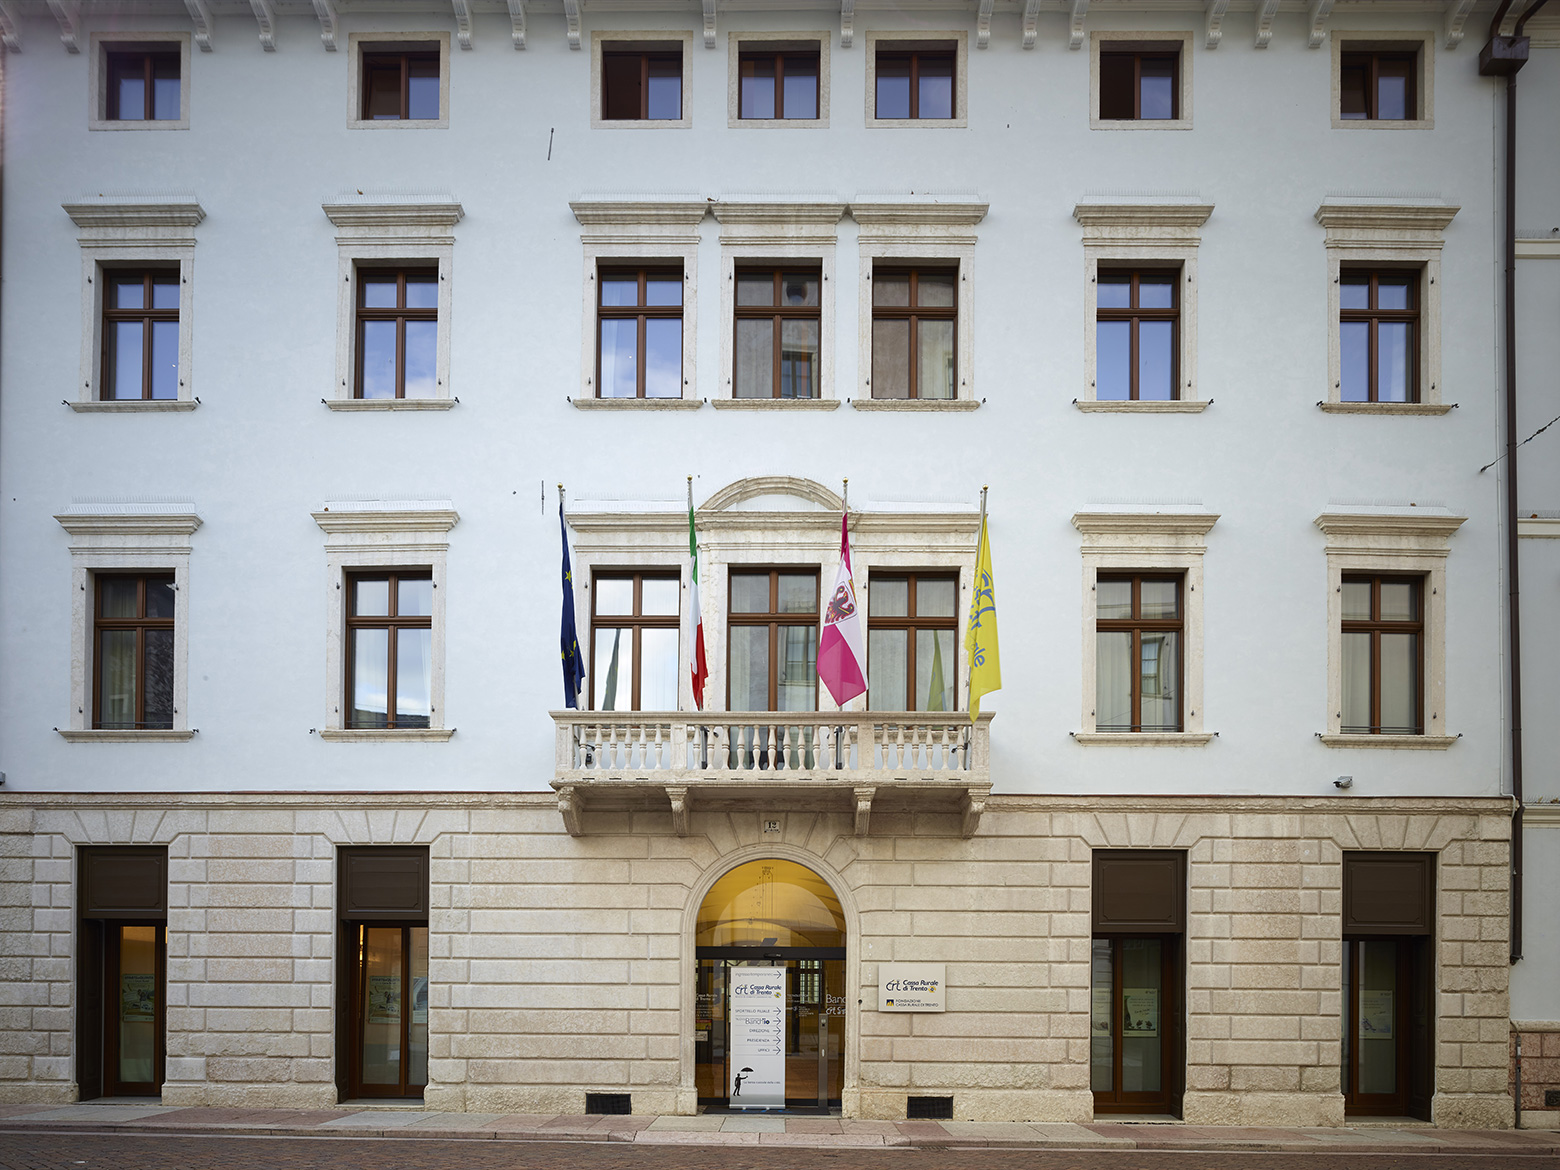 Central Bank of Trento – Idea 85